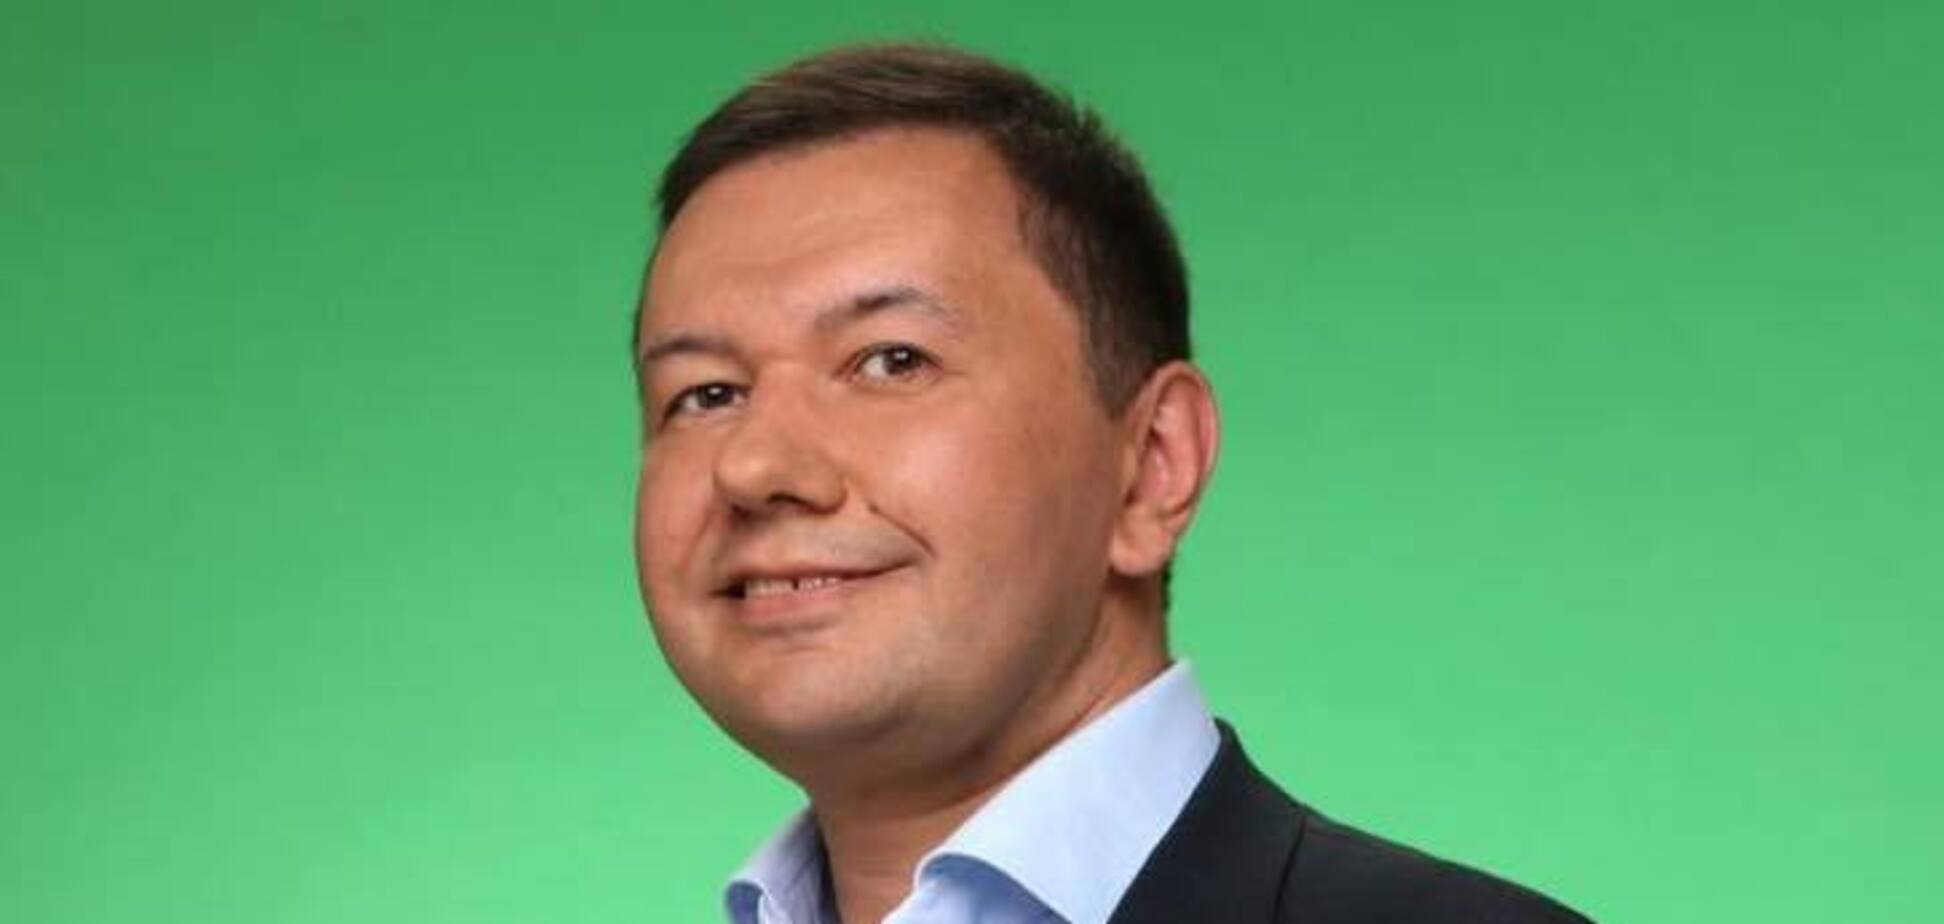 У главы экологического комитета Олега Бондаренко нашлись связи с Кропачевым